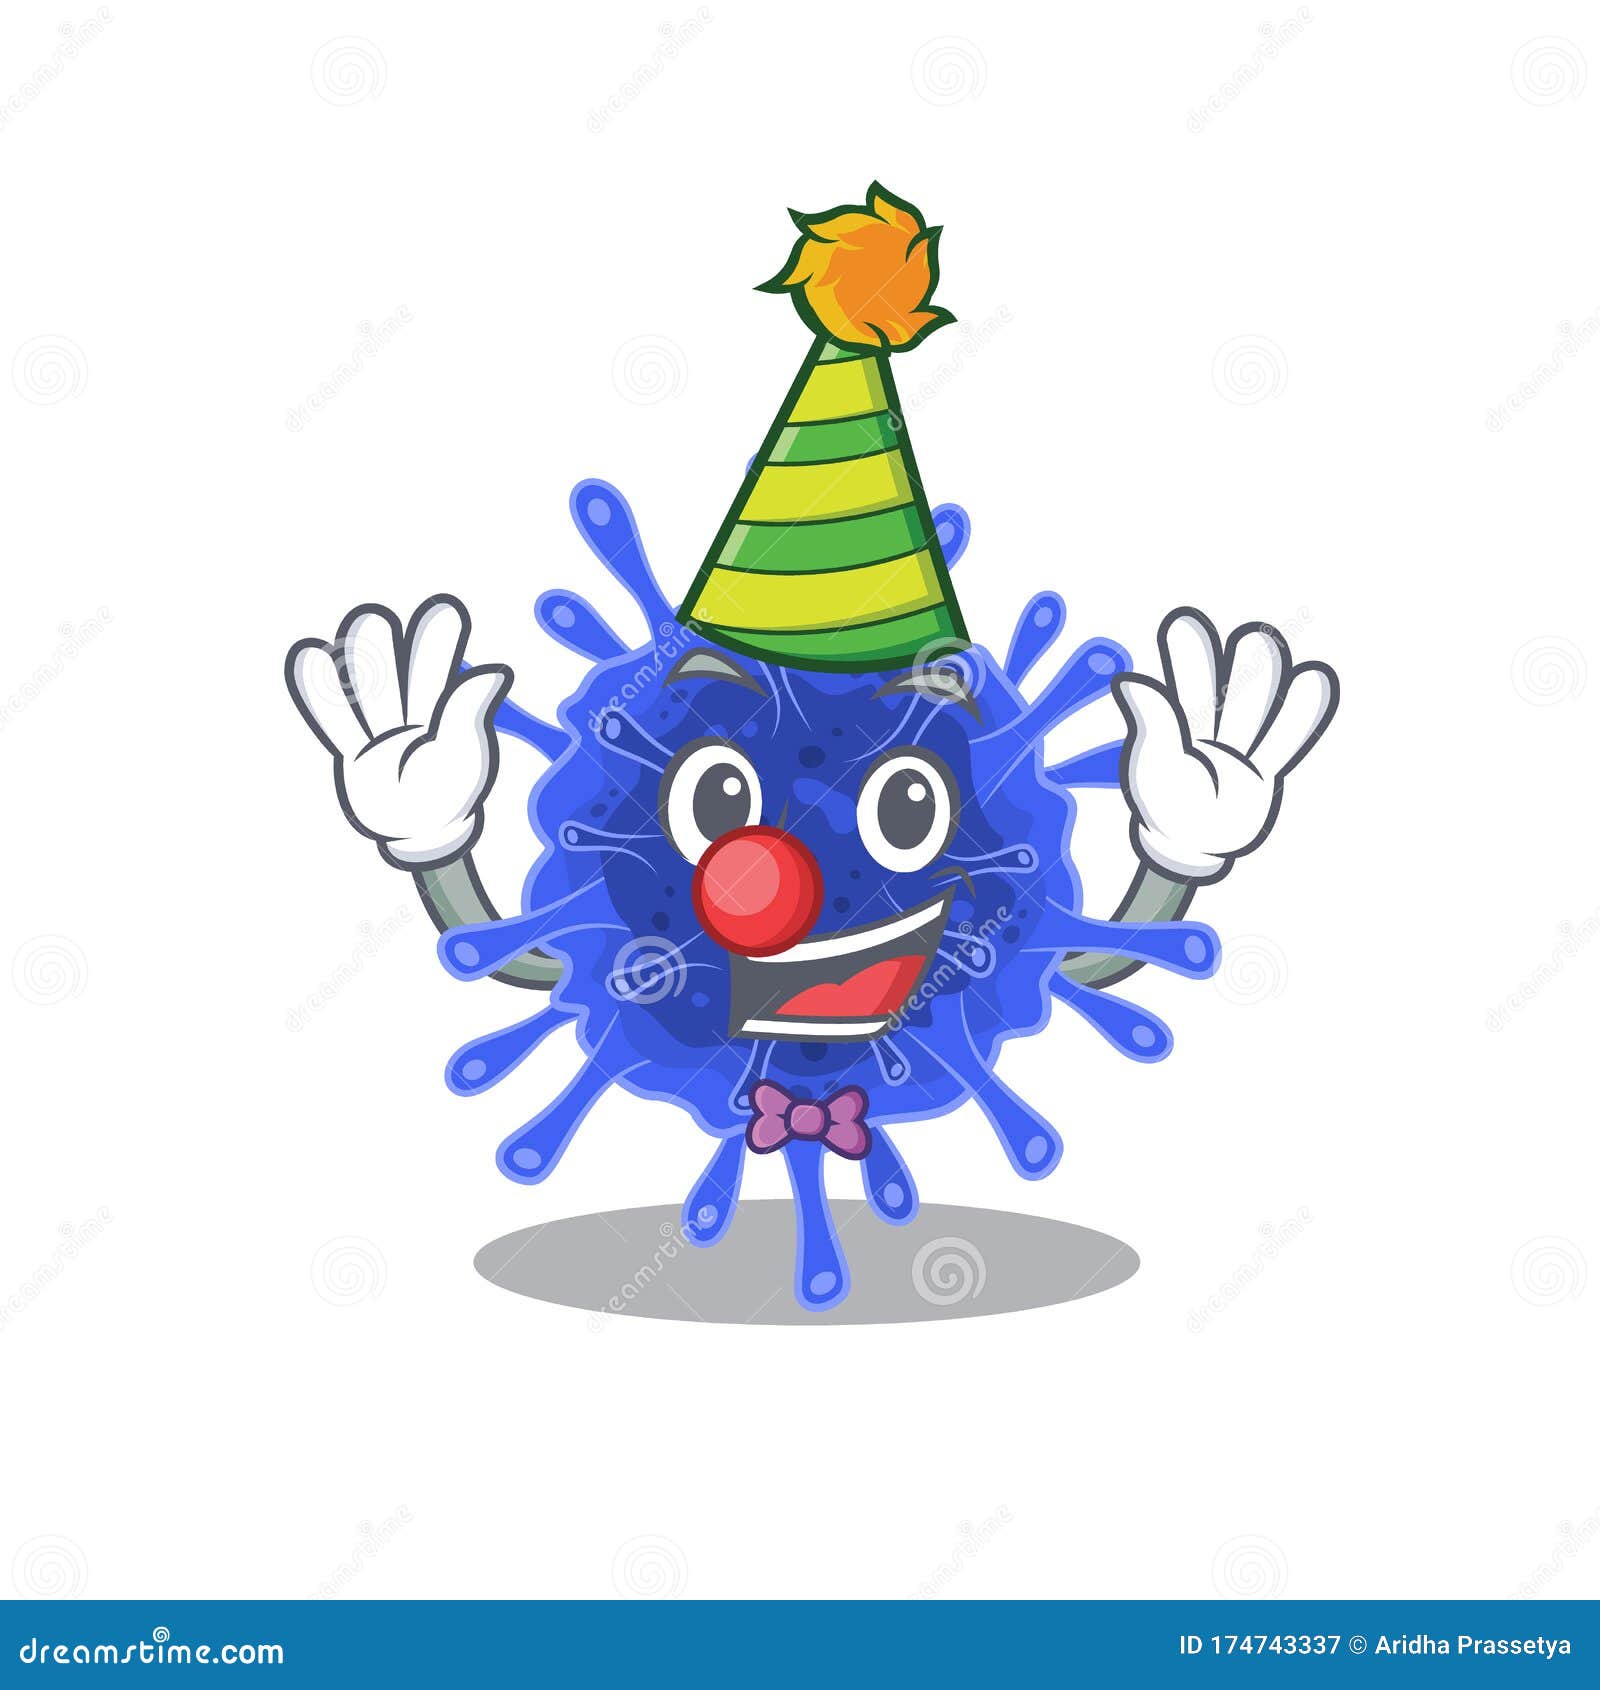 Cute And Funny Clown Bacteria Coronavirus Cartoon Character Mascot